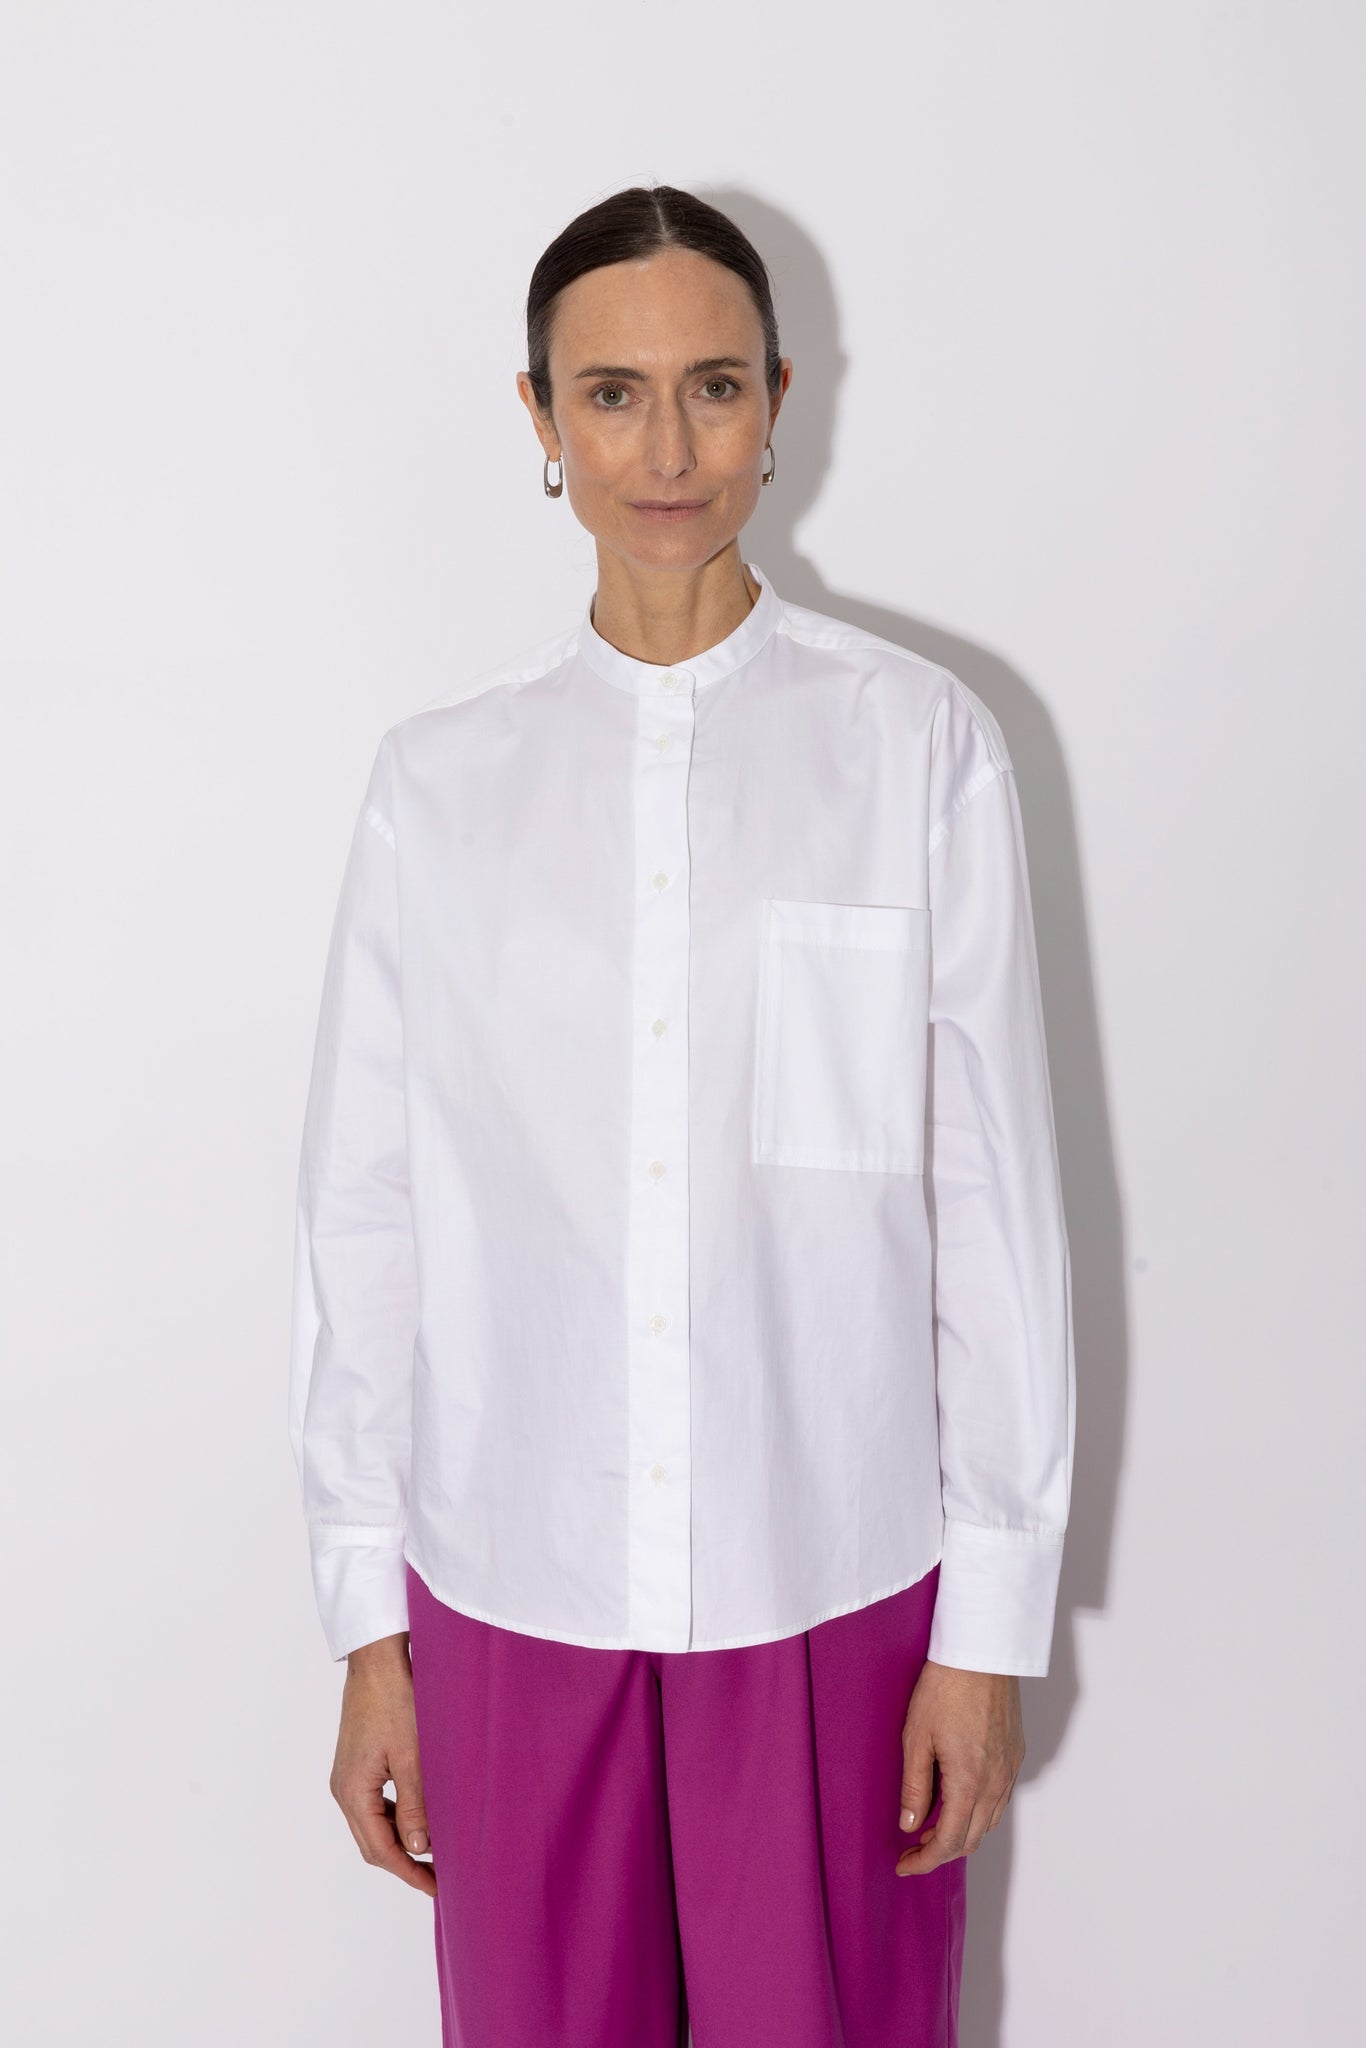 BENNITA shirt | OPTICAL WHITE